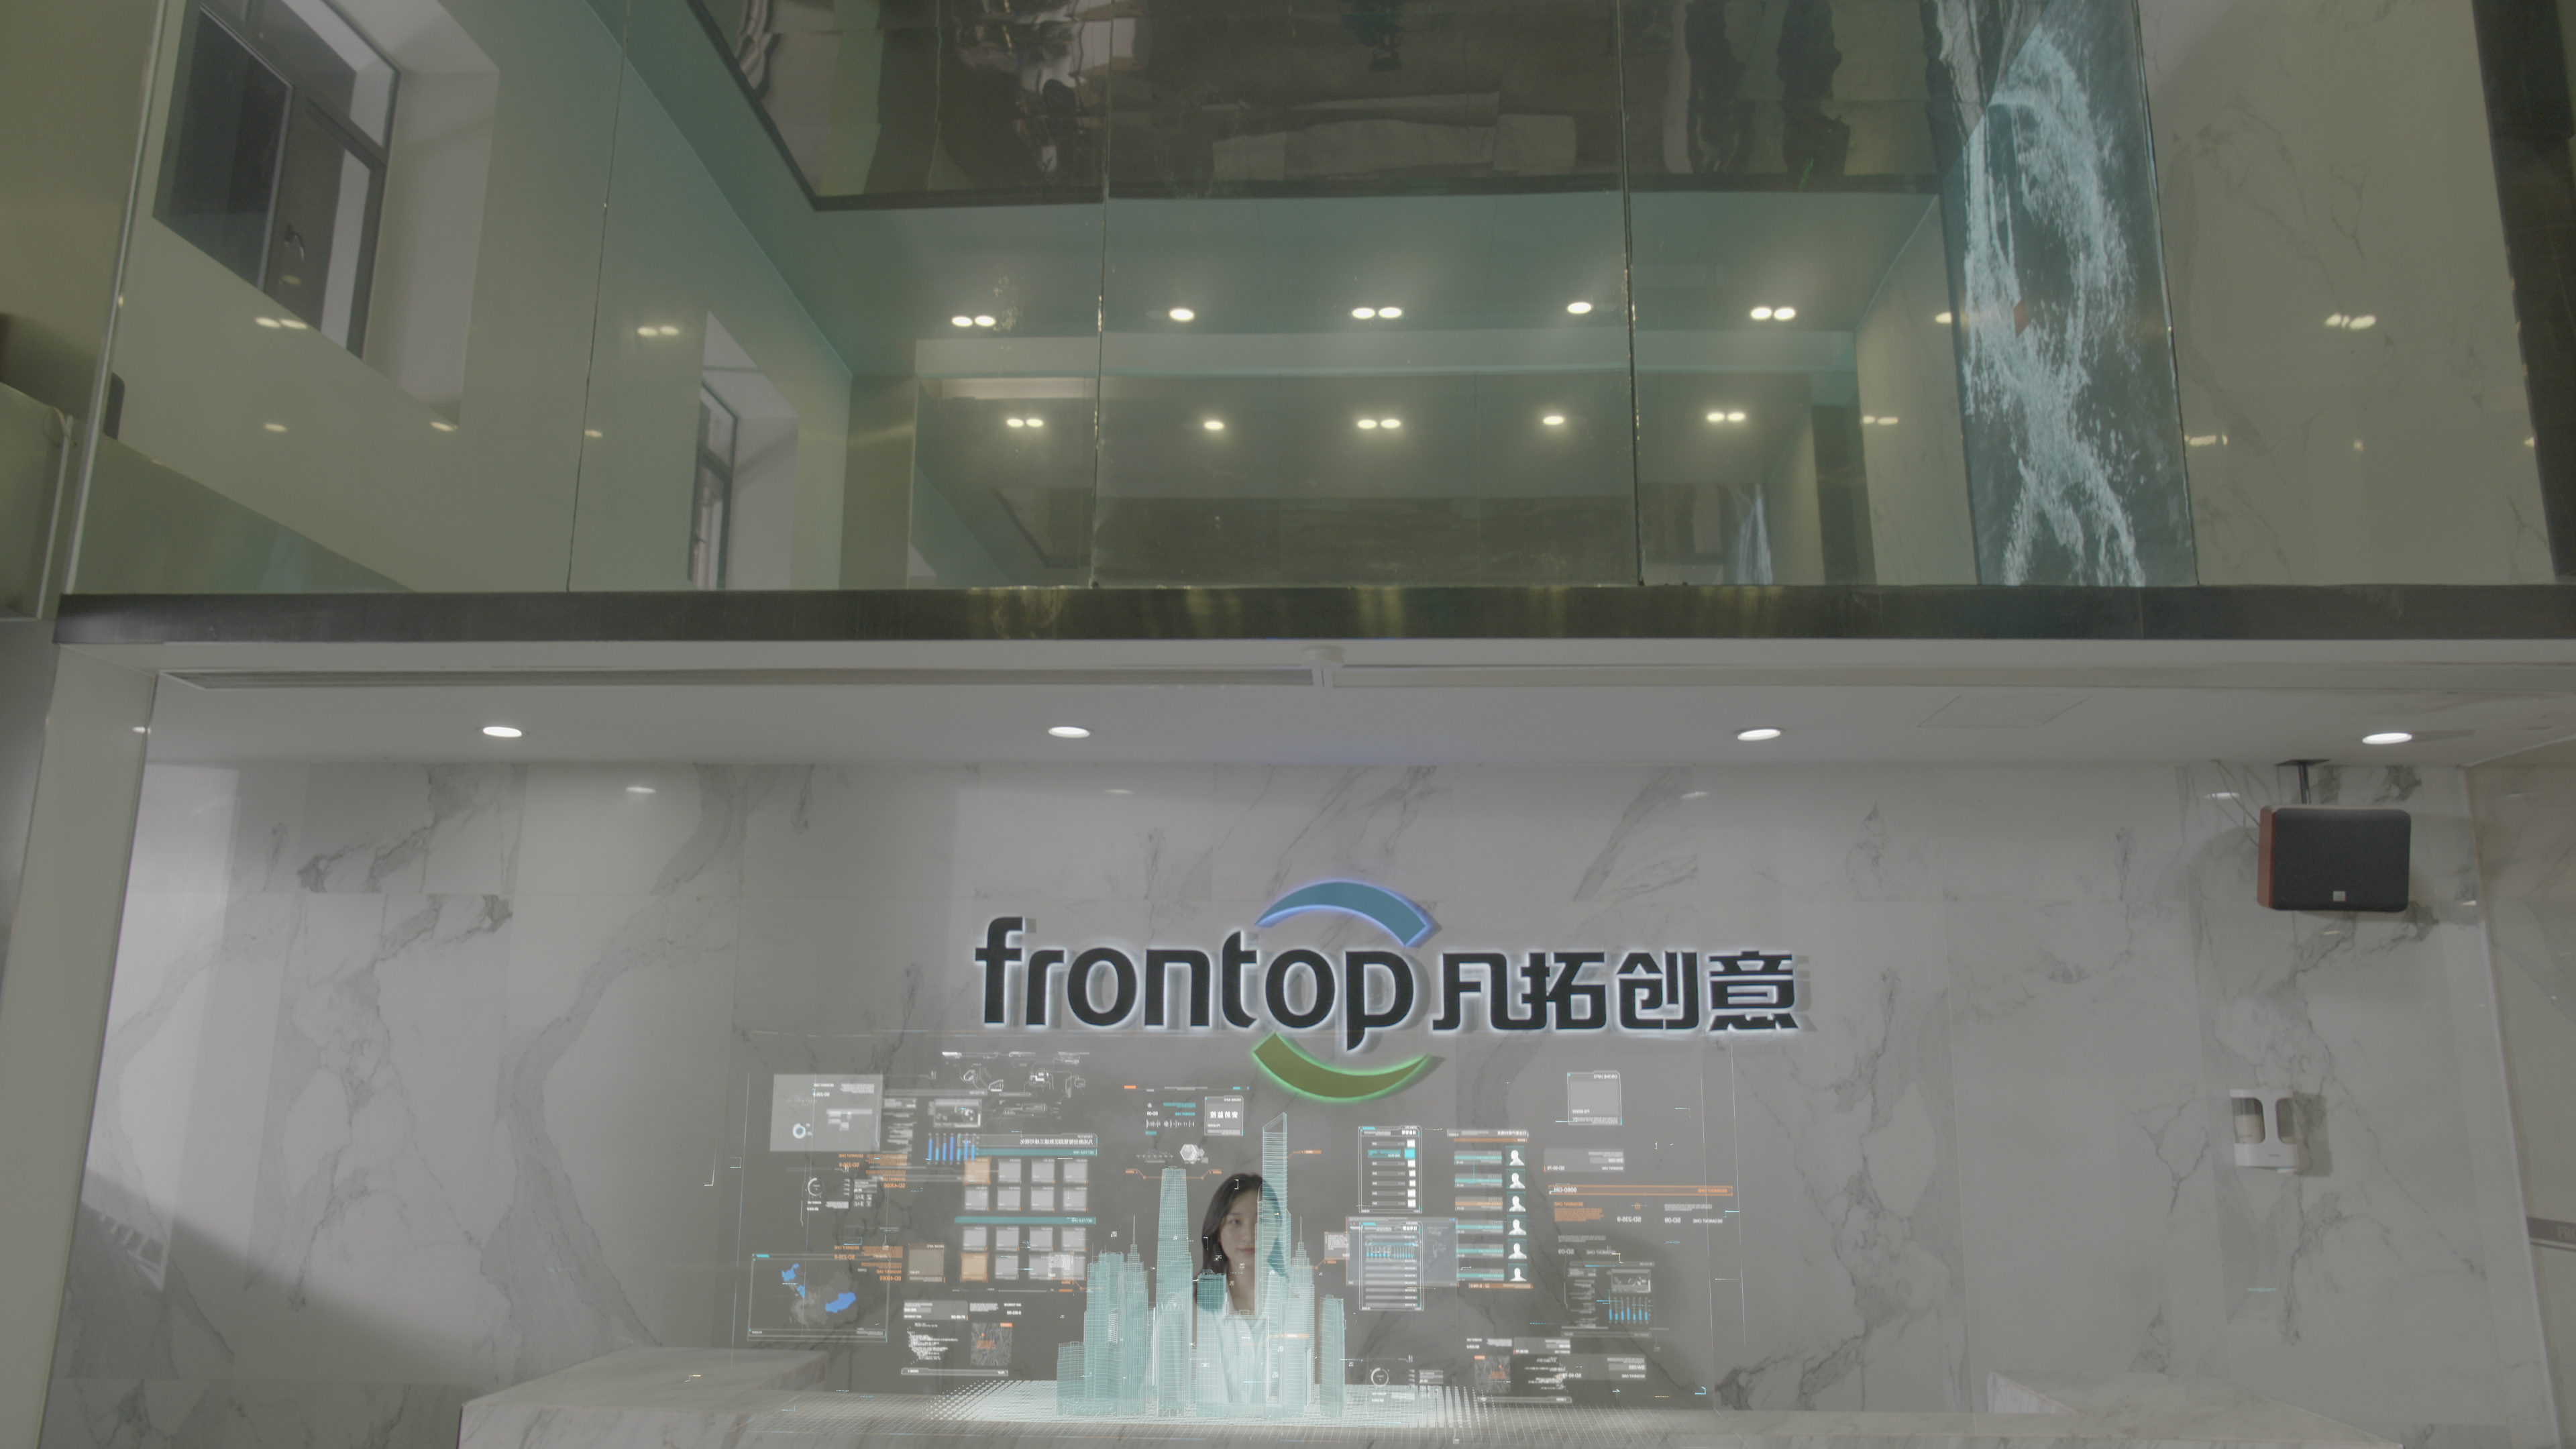 Frontop Celebrat XX annos et Launches Novus Website